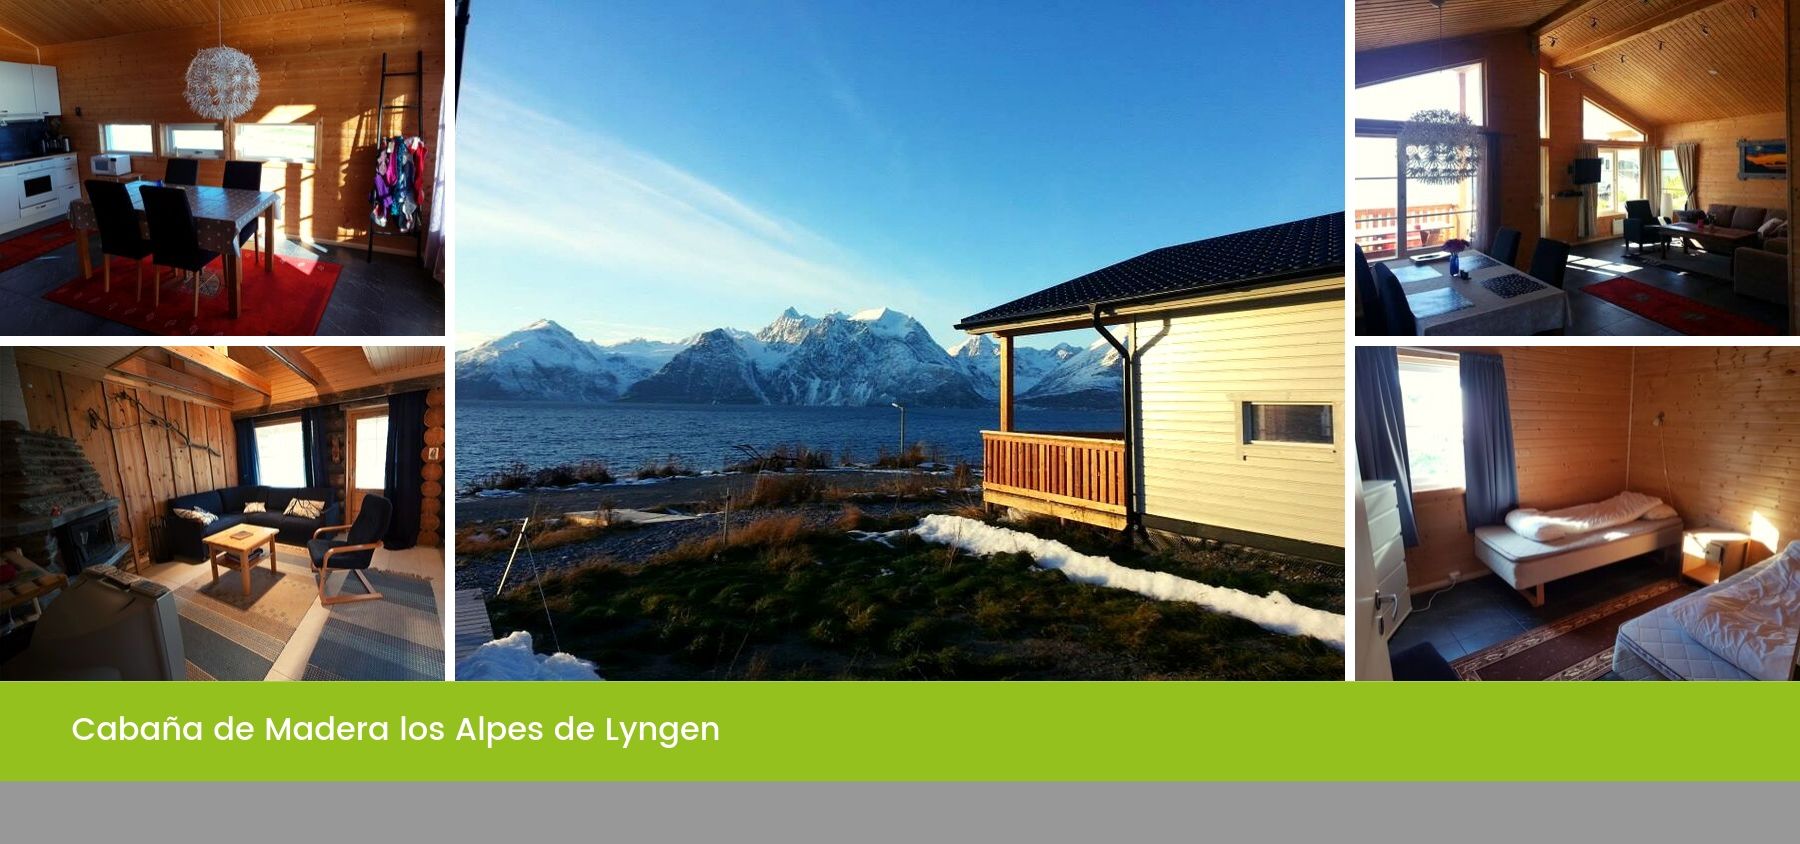 Cabaña de Madera los Alpes de Lyngen, Tromso, Noruega